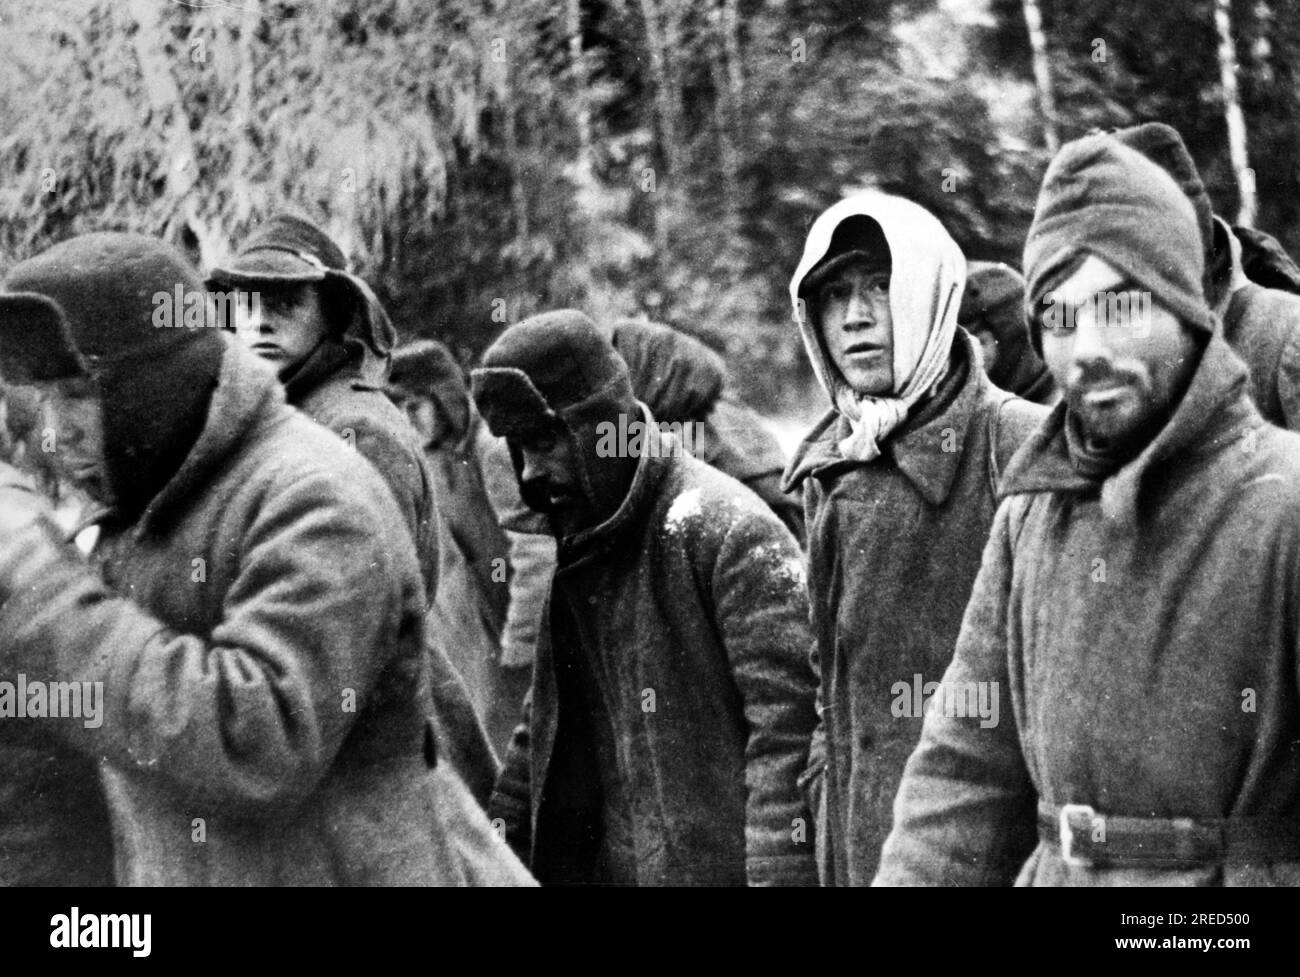 Prigionieri russi durante l'attacco a Mosca nella sezione centrale del fronte orientale. Foto: Teppen. [traduzione automatica] Foto Stock